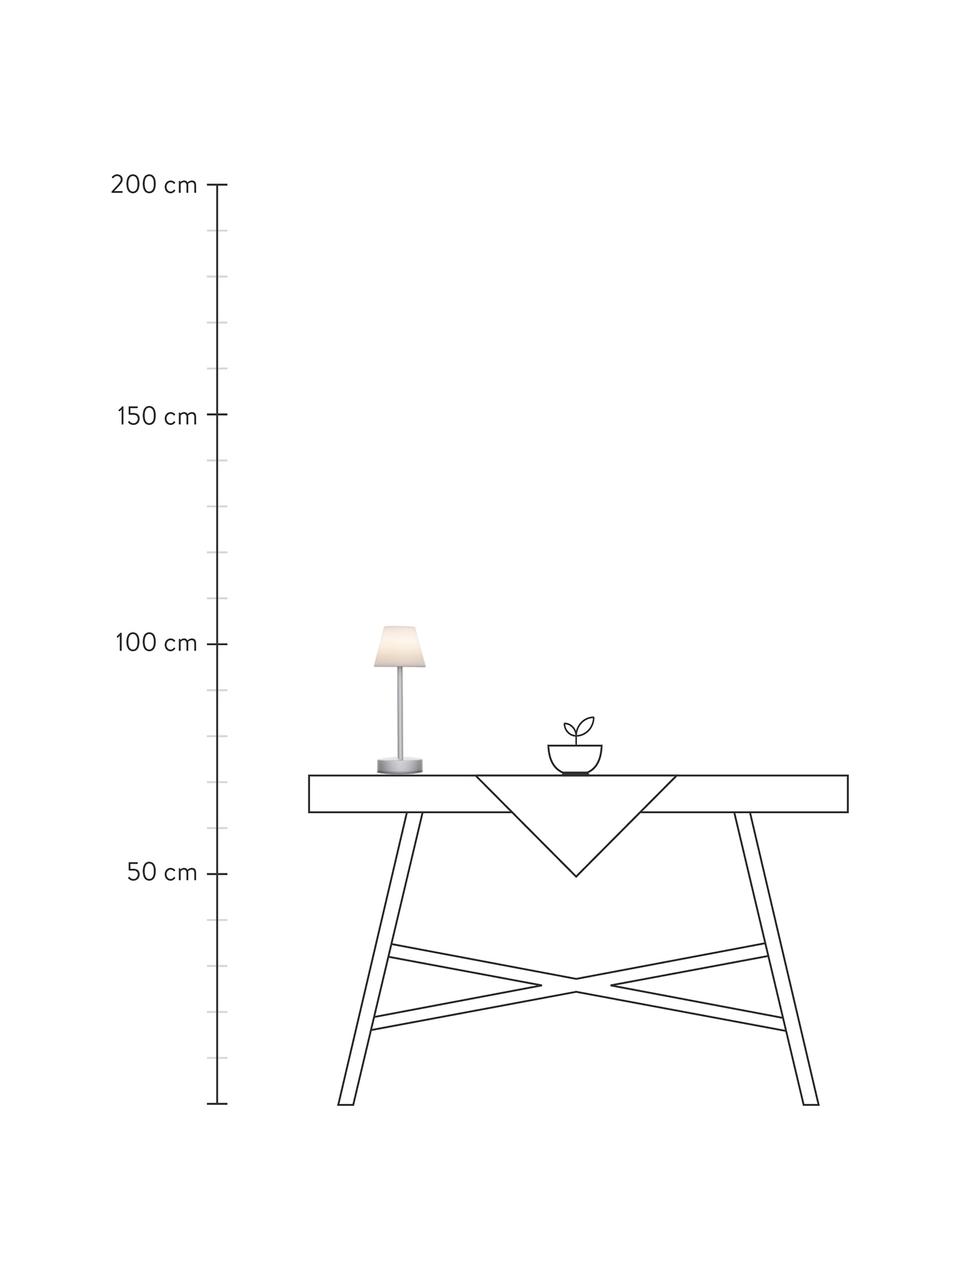 Přenosná stmívatelná venkovní stolní LED lampa s dotykovou funkcí Lola, Bílá, stříbrná, Ø 11 cm, V 32 cm